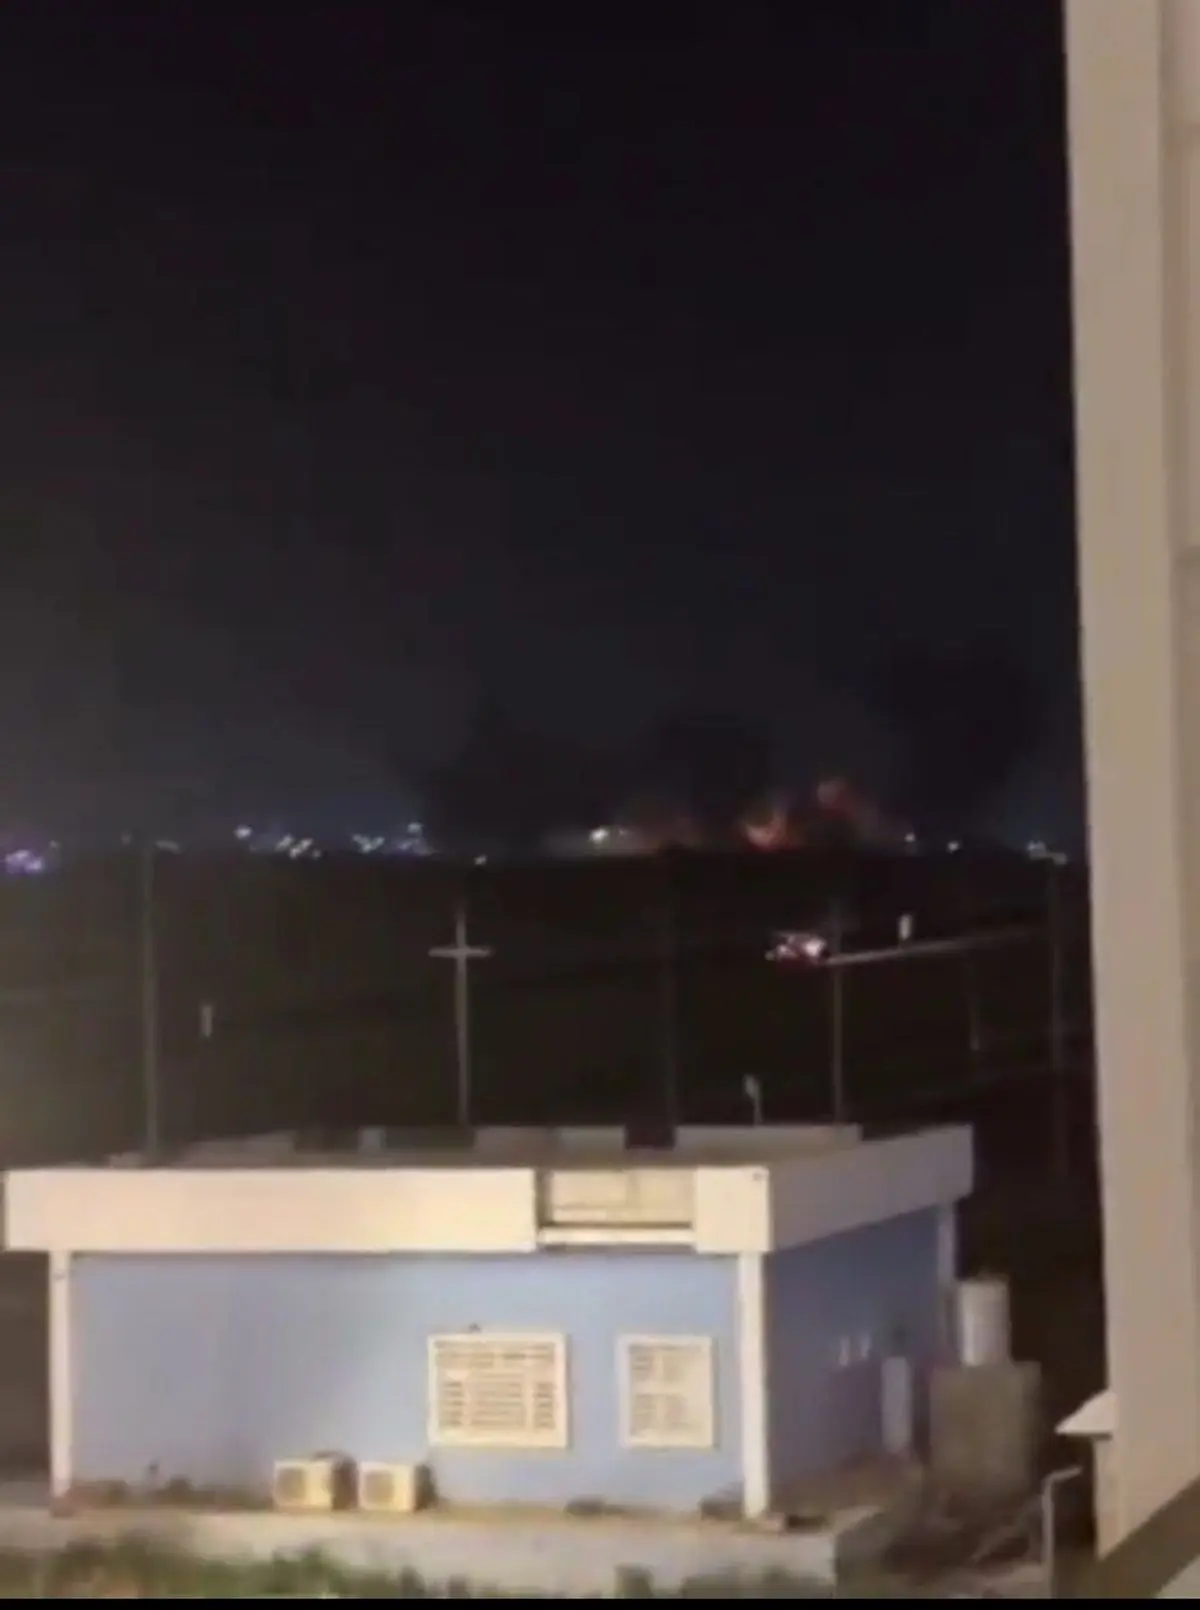 اصابت دست‌کم ۱۴ موشک گراد به پایگاه نظامی آمریکا در اربیل +ویدئو